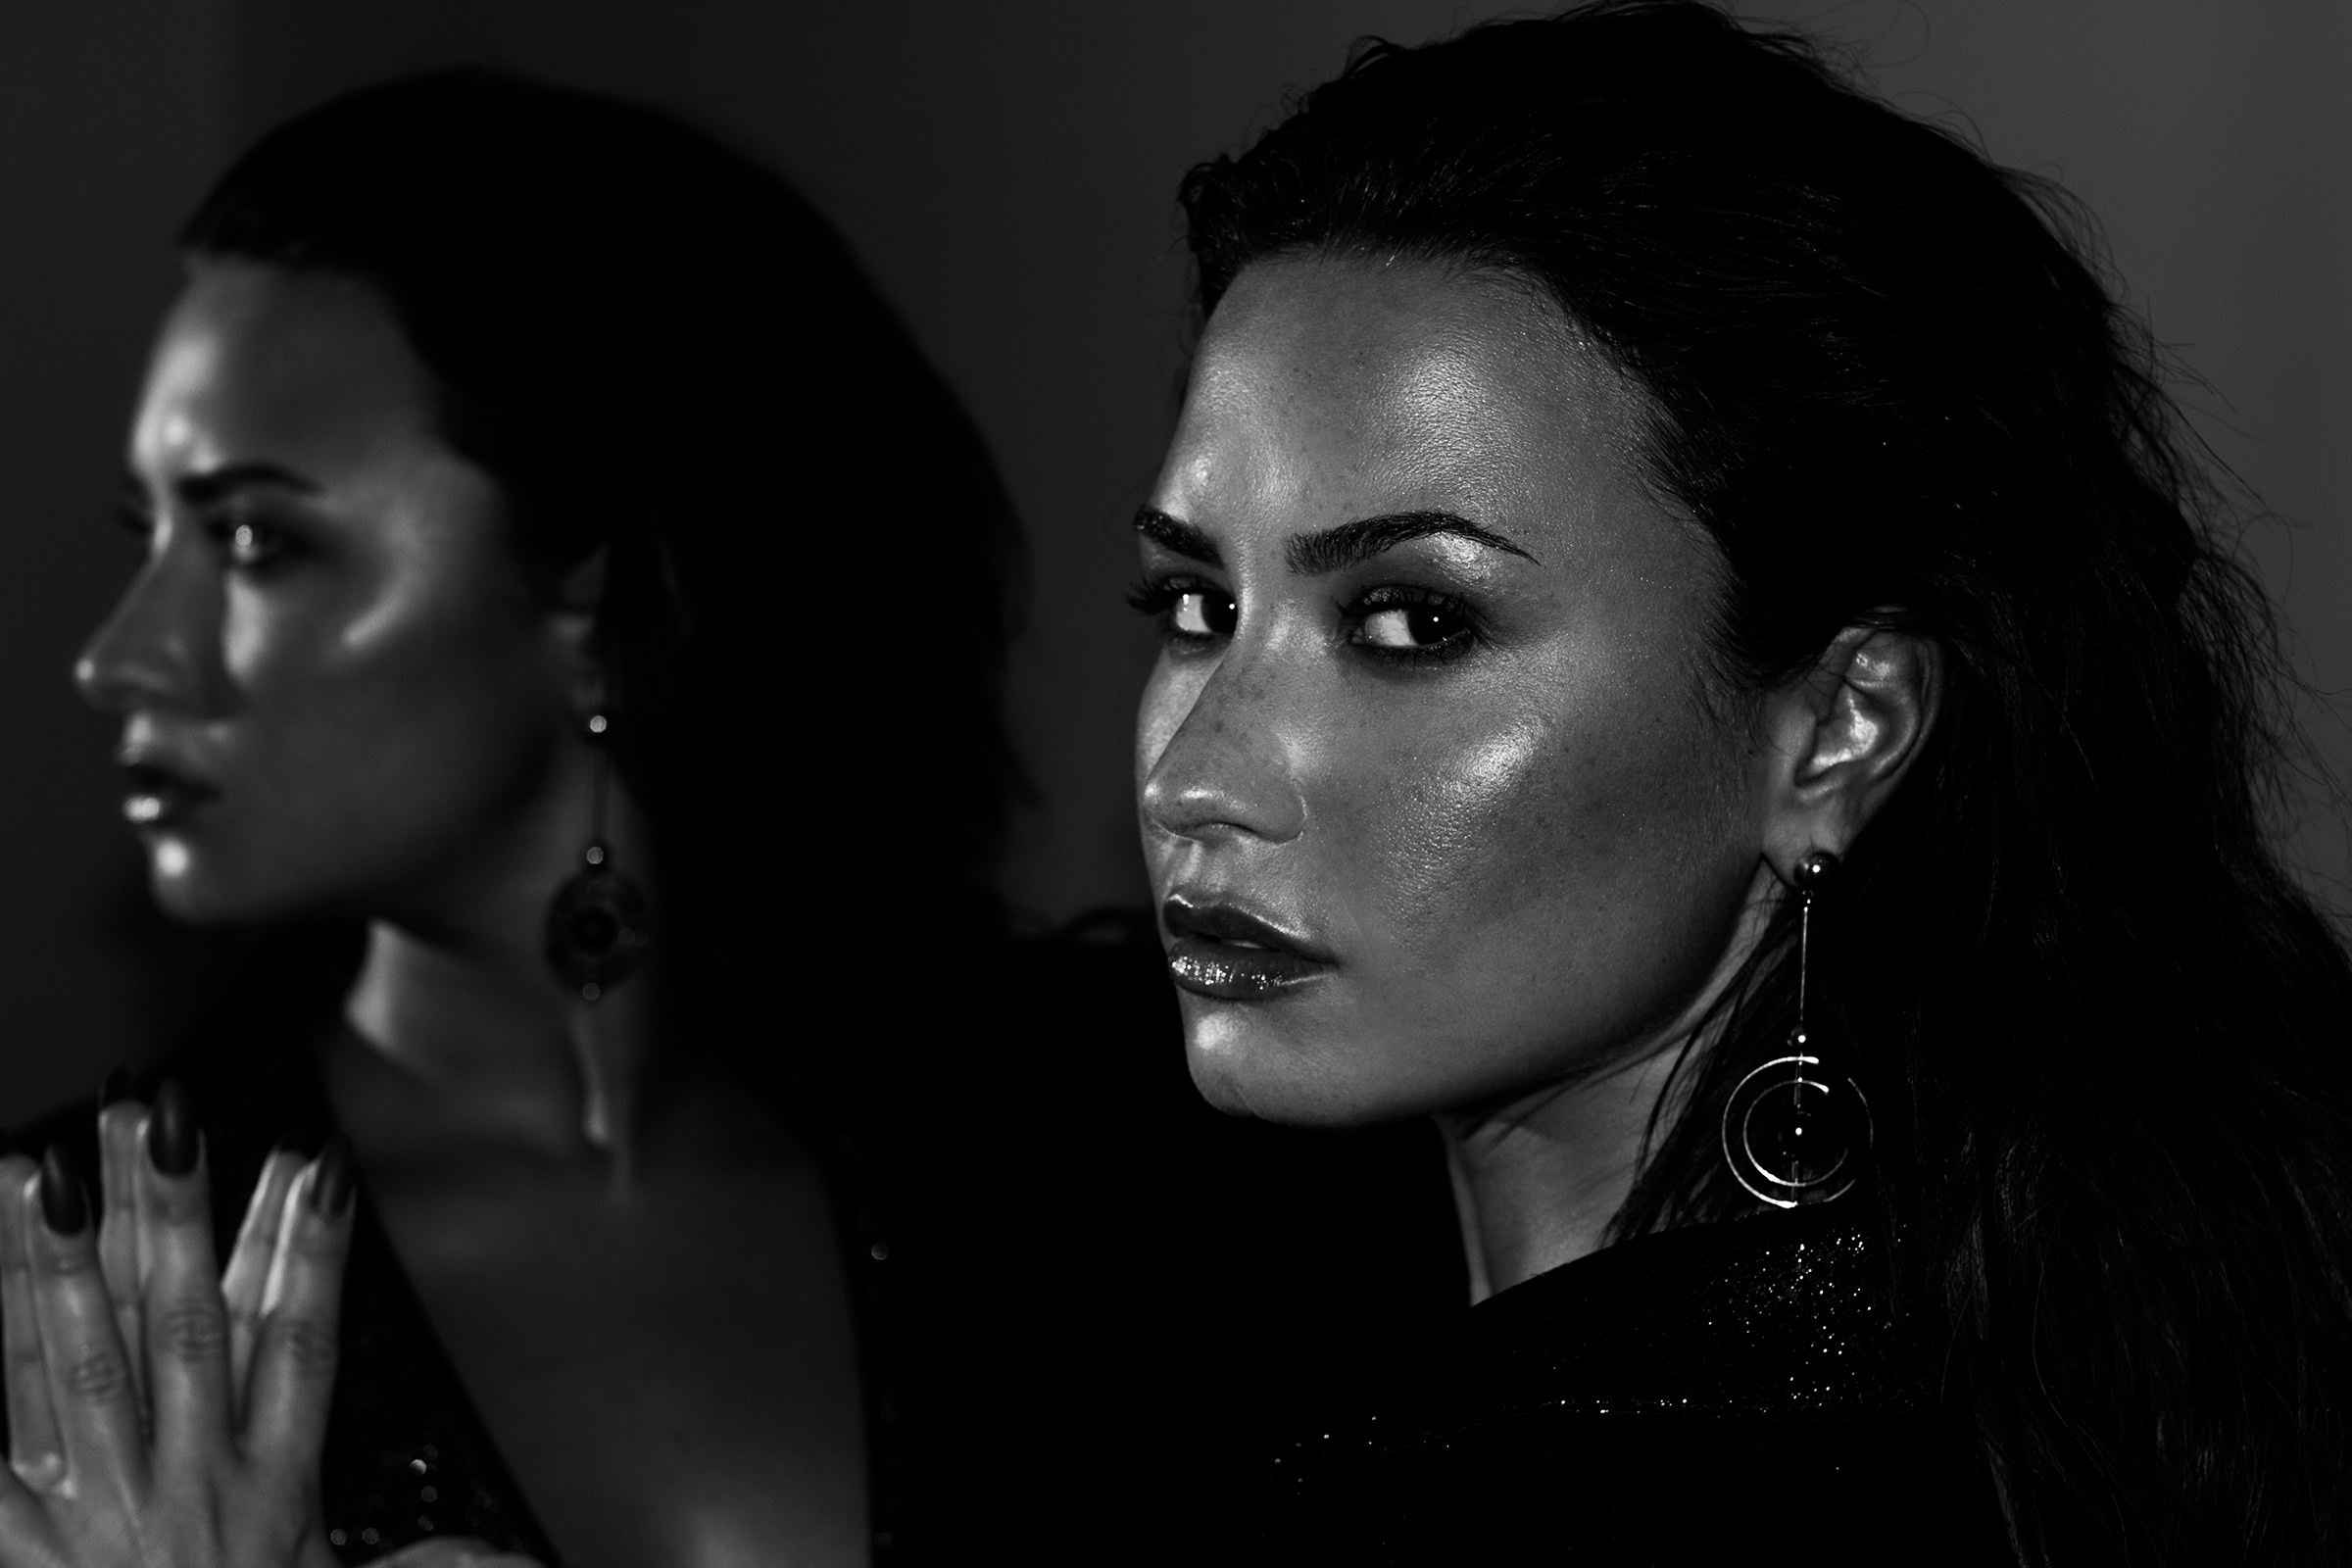 American Black Amp White Demi Lovato Earrings Face Lipstick Reflection Singer 2400x1600